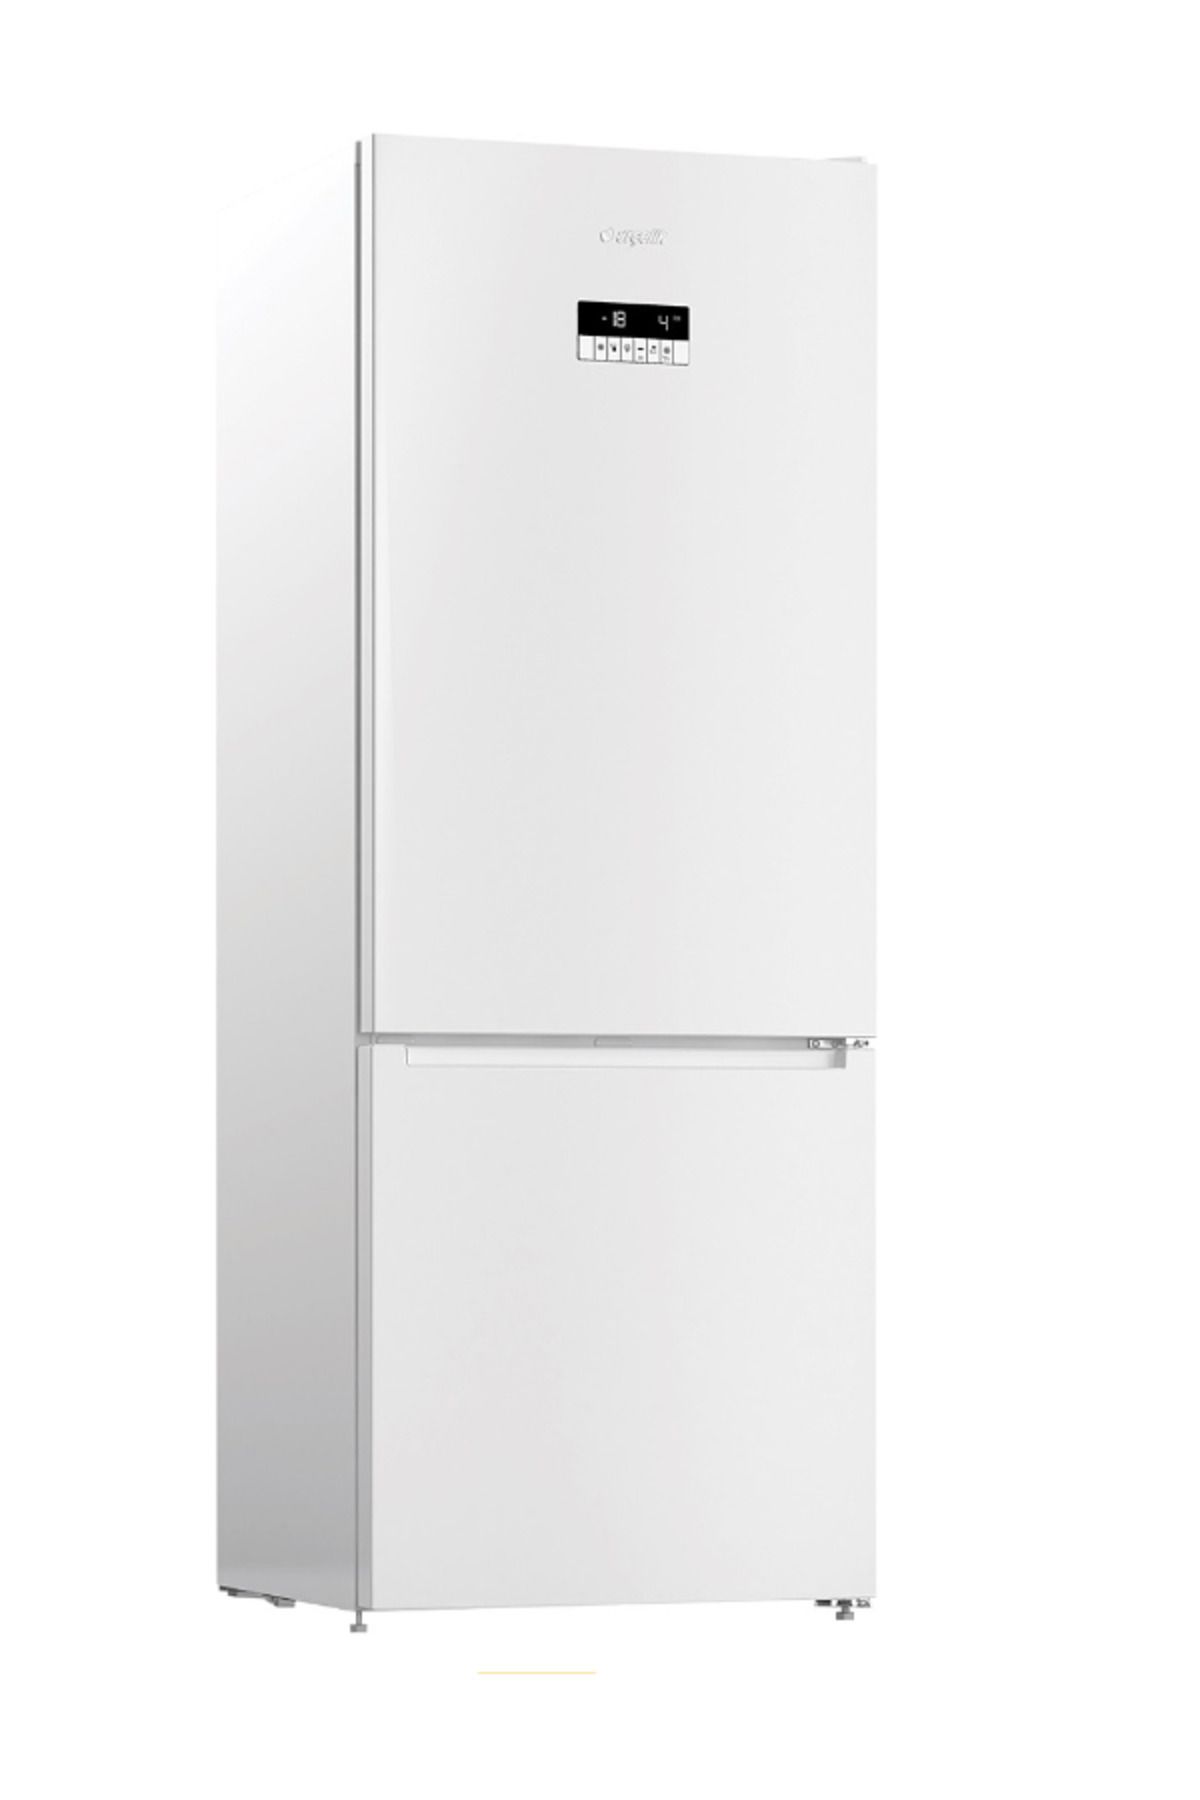 Arçelik 270530 Eb Kombi Tipi No Frost Buzdolabı